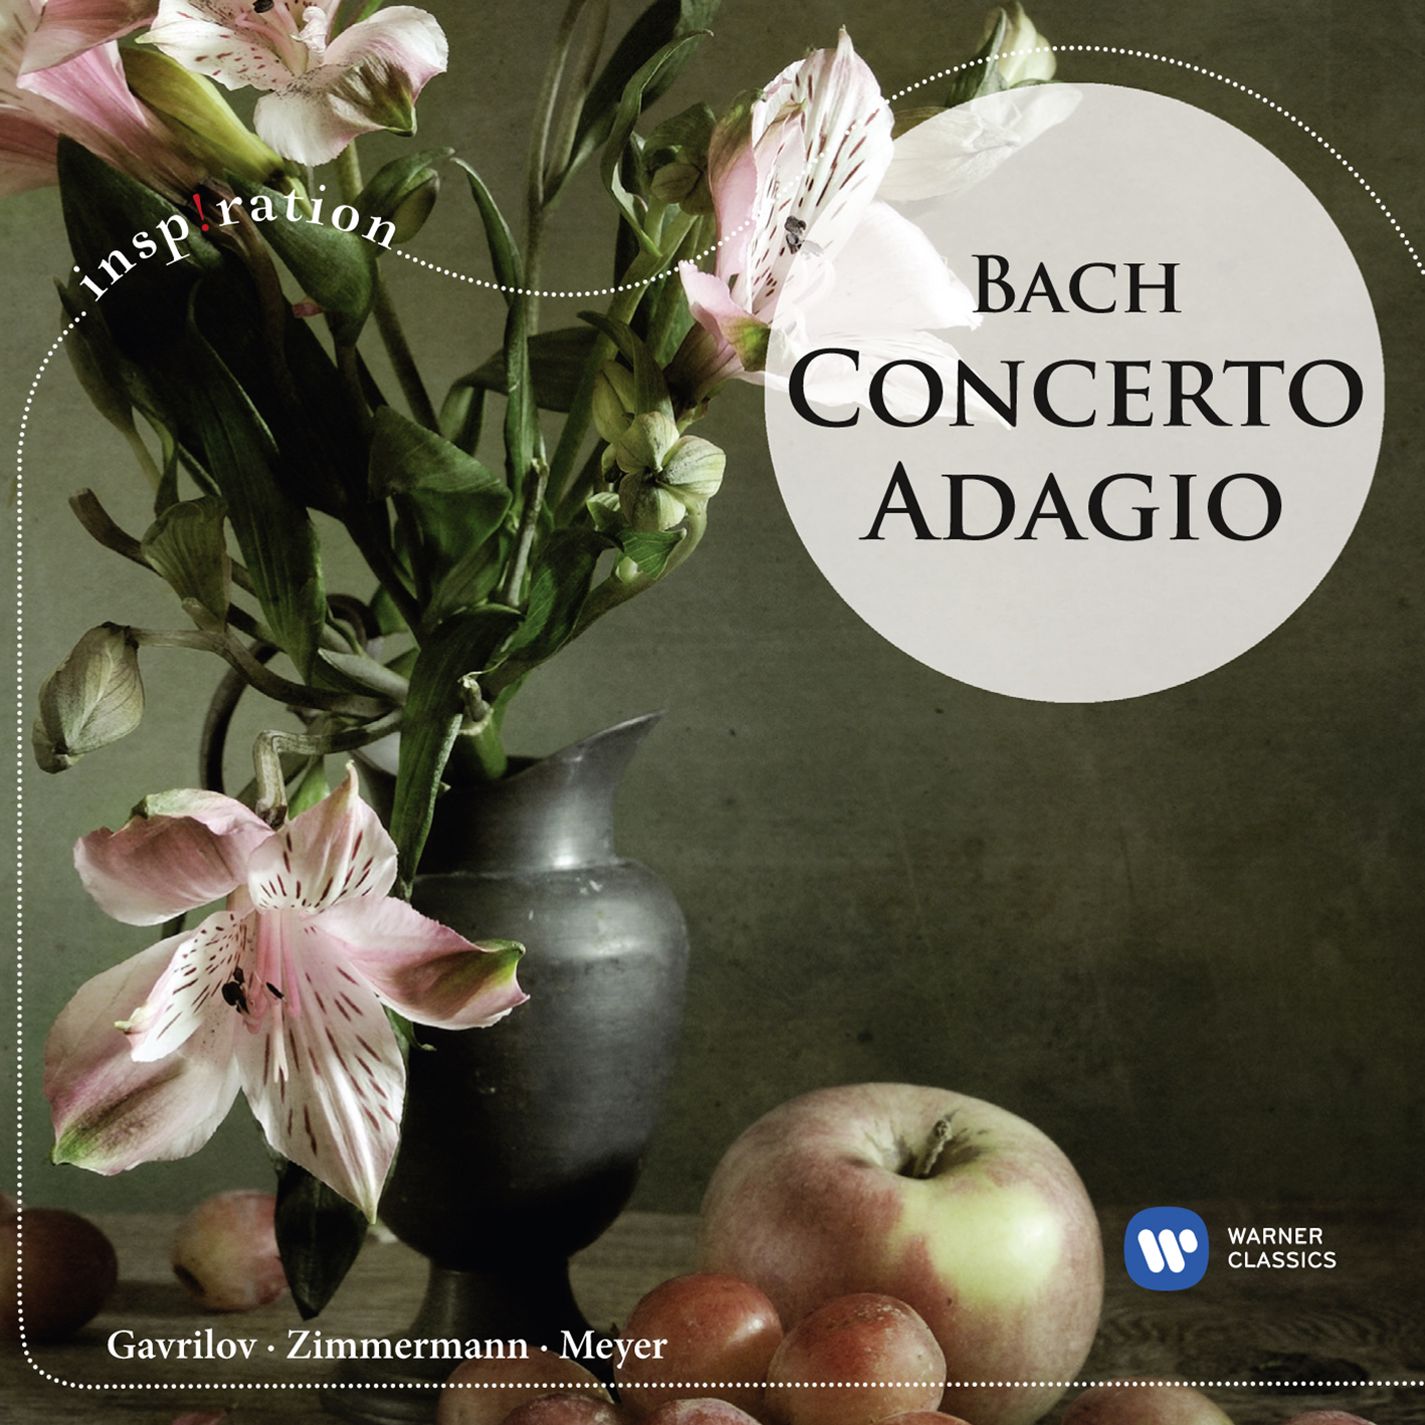 Concerto Adagio: Bach